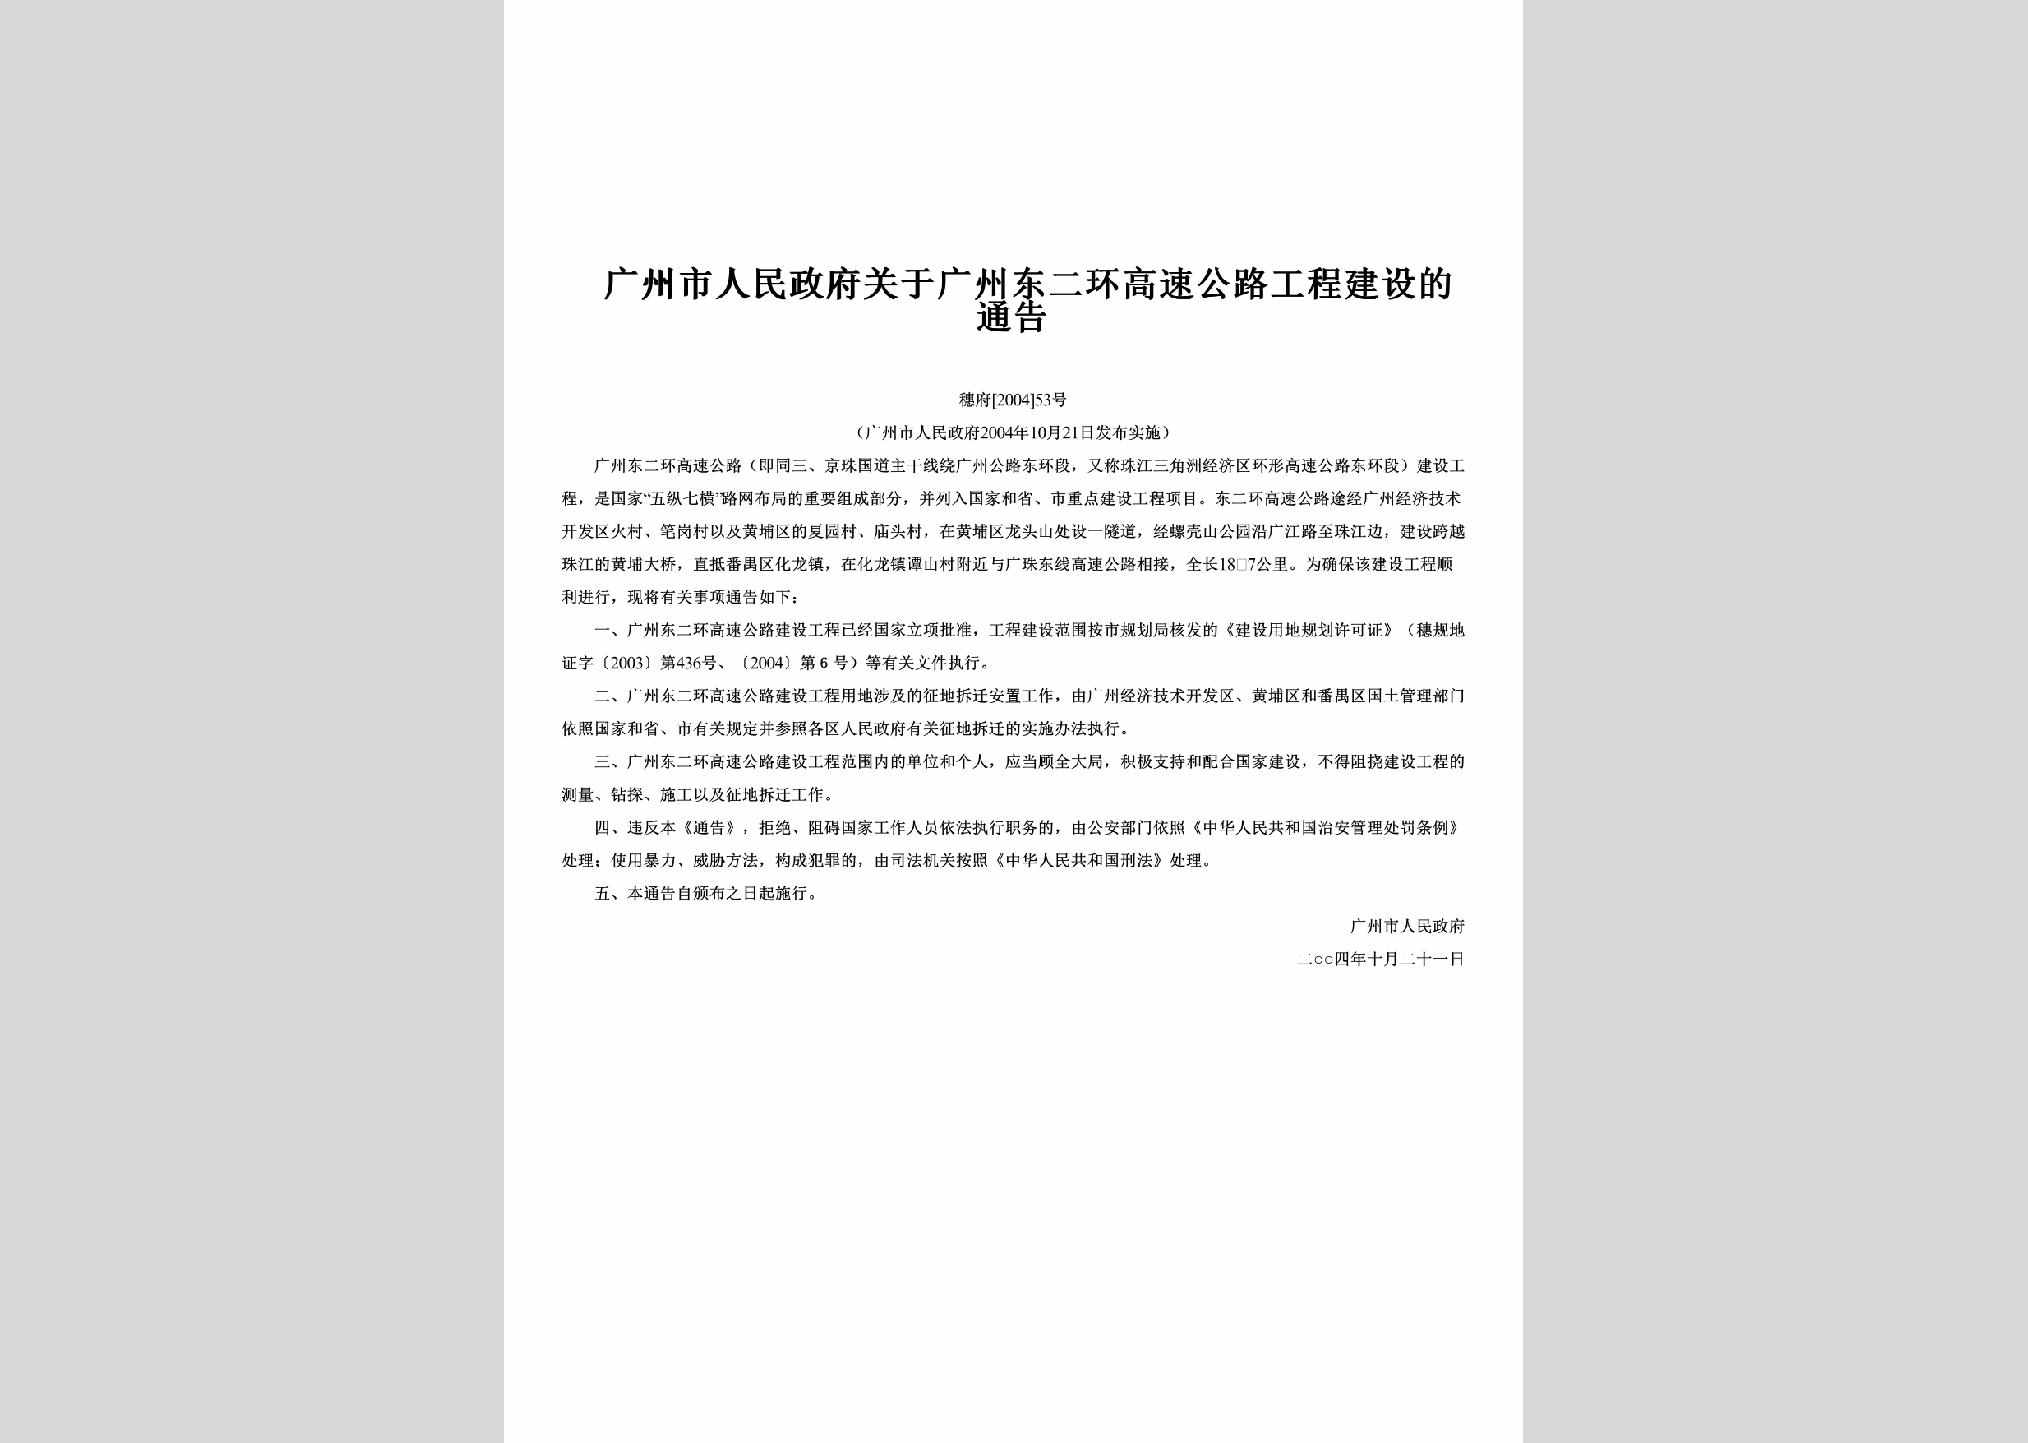 穗府[2004]53号：关于广州东二环高速公路工程建设的通告